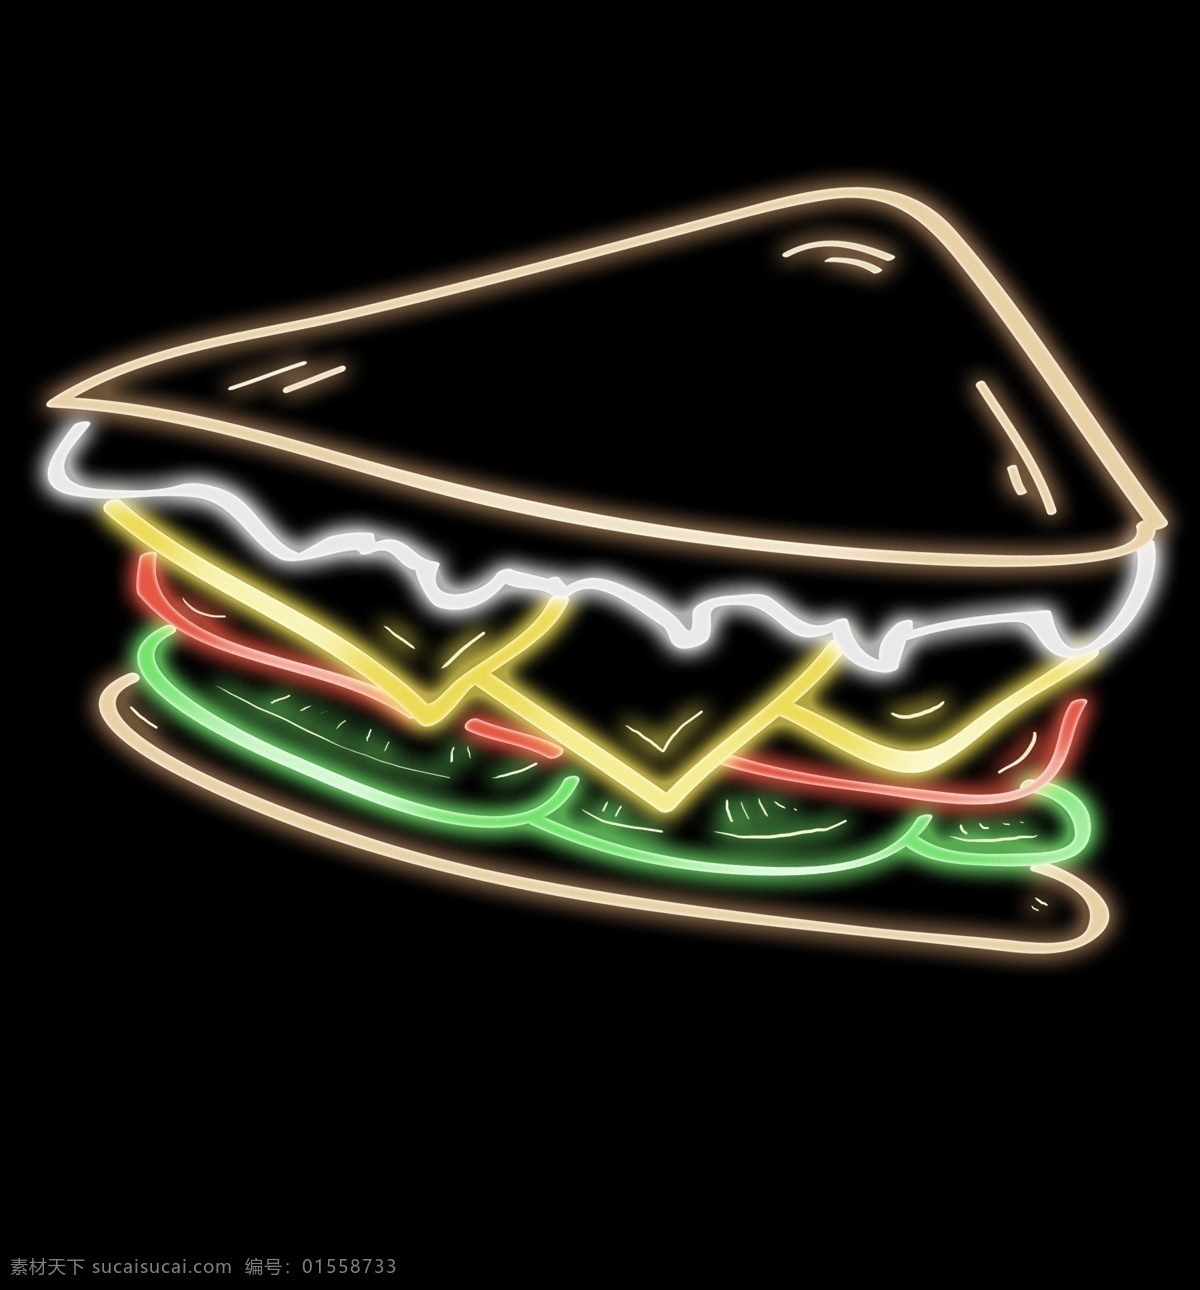 发光 西餐 三明治 发光三明治 发光美食 灯管食物 光感三明治 夏季食物 发光西餐